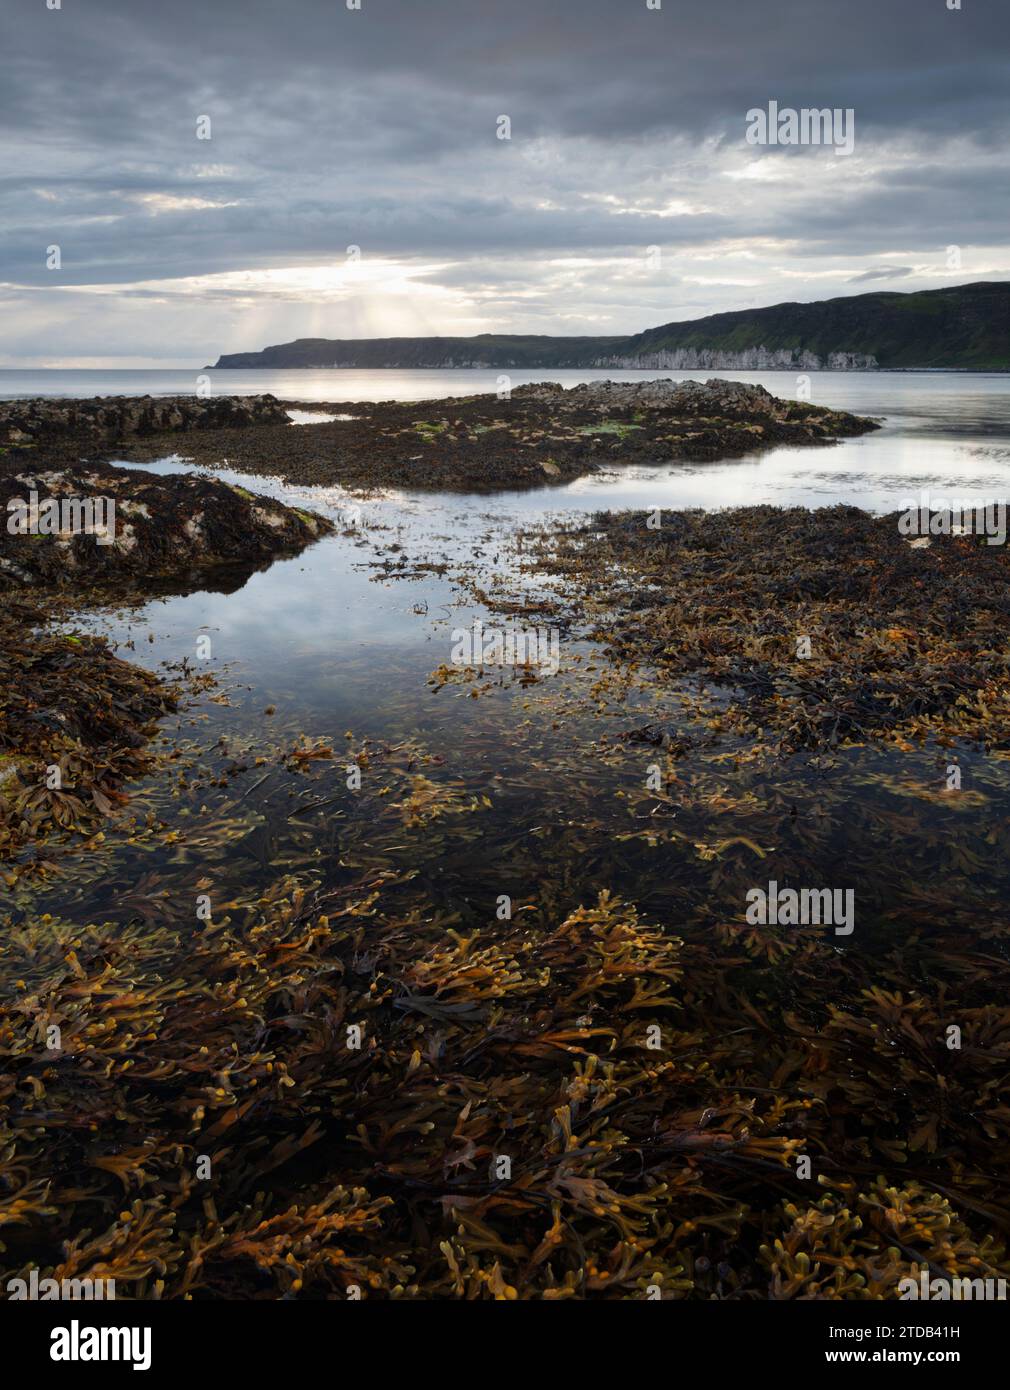 Alghe e piscine rocciose sull'isola di Rathlin. Contea di Antrim, Irlanda del Nord. REGNO UNITO. Foto Stock